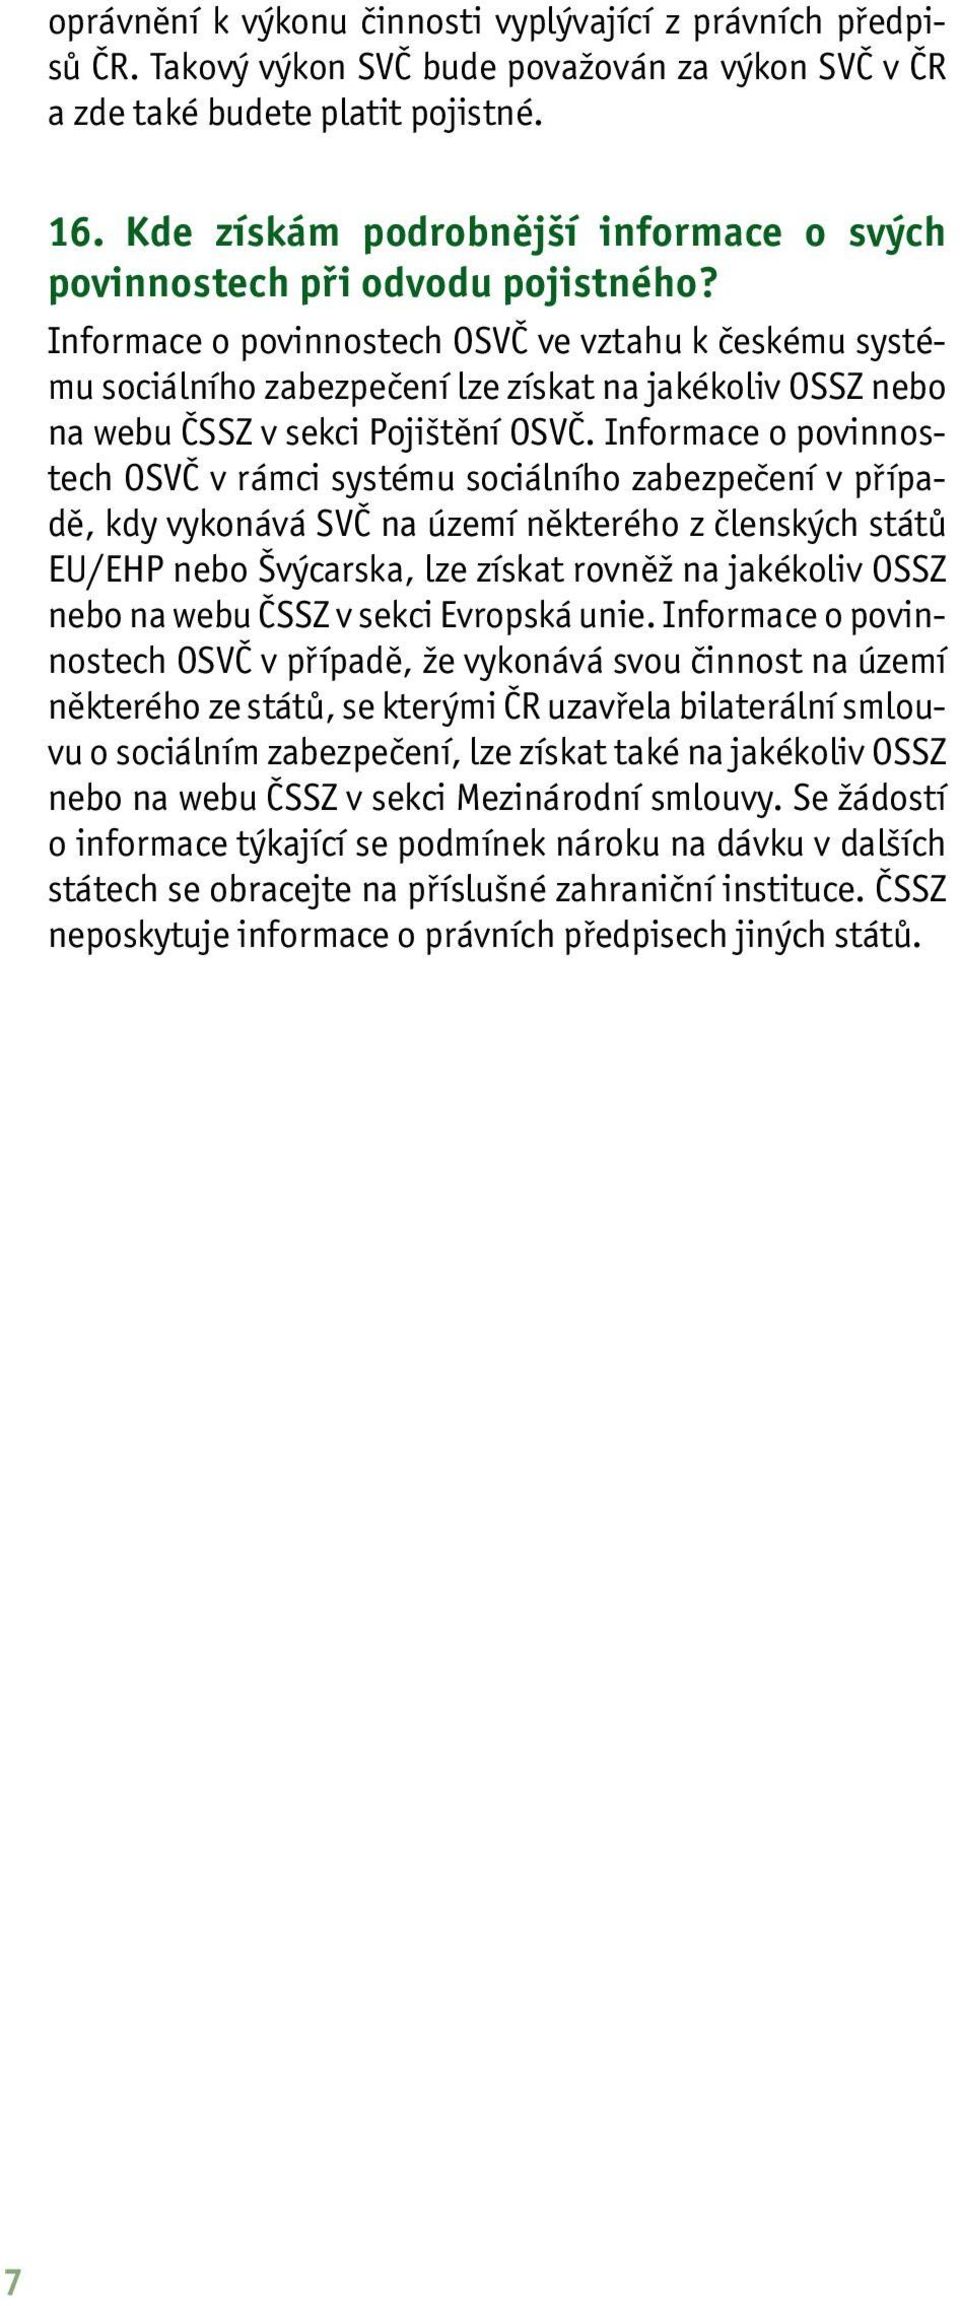 Informace o povinnostech OSVČ ve vztahu k českému systému sociálního zabezpečení lze získat na jakékoliv OSSZ nebo na webu ČSSZ v sekci Pojištění OSVČ.